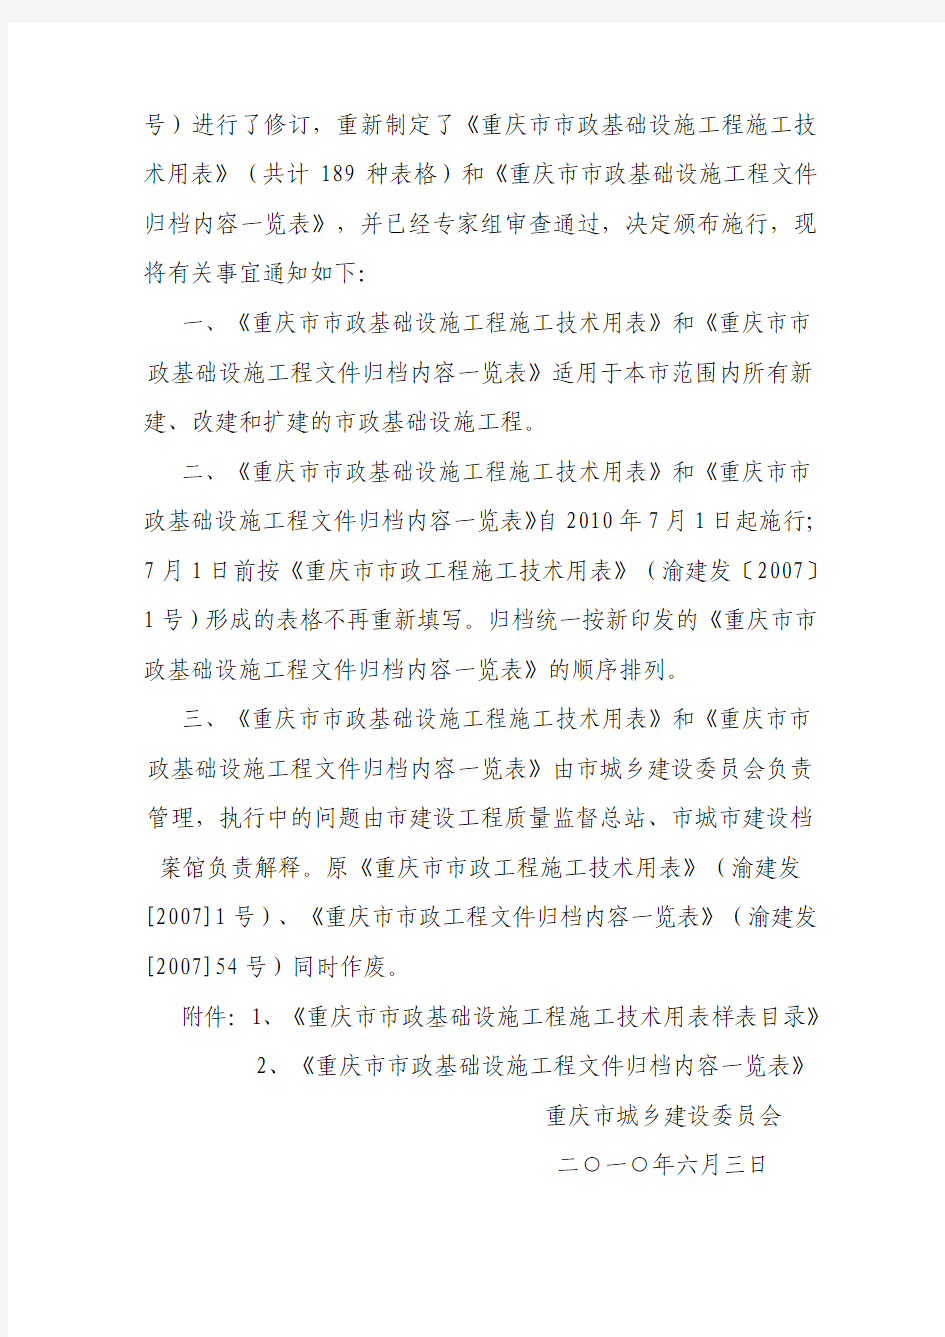 关于印发《重庆市市政基础设施工程施工技术用表》和《重庆市市政基础设施工程文件归档内容一览表》的通知